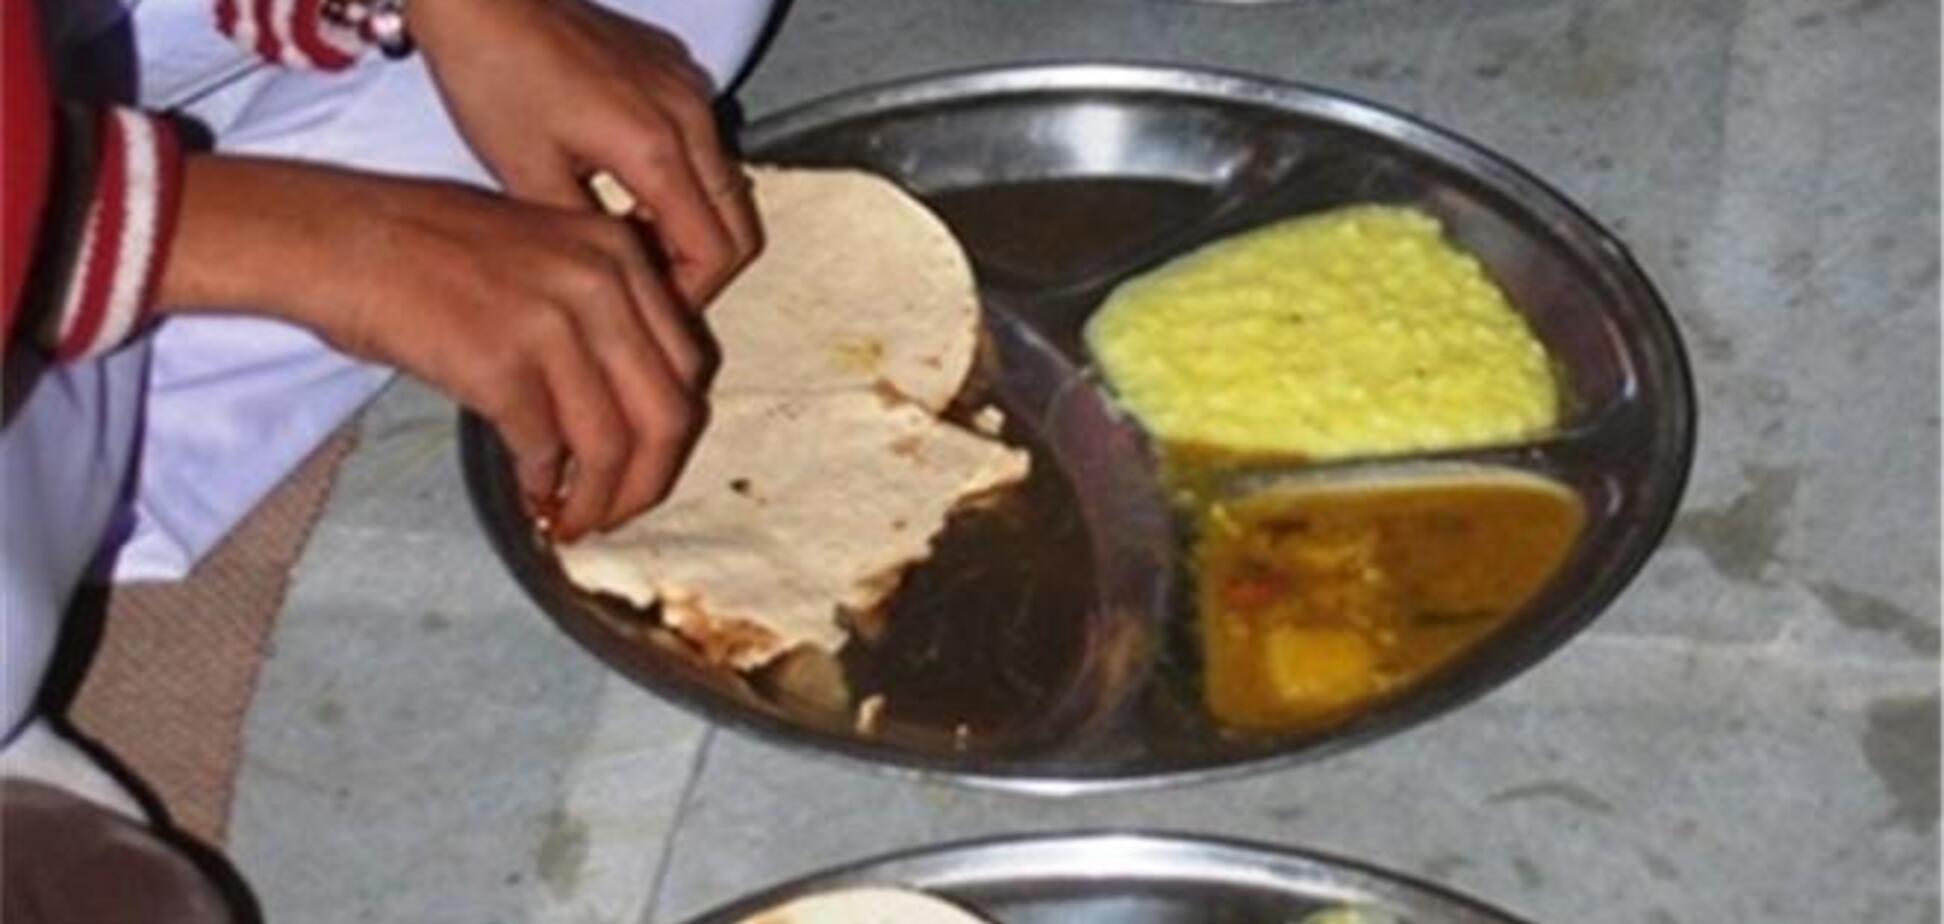 Более 70 индийских школьников отравились обедом из ящерицы